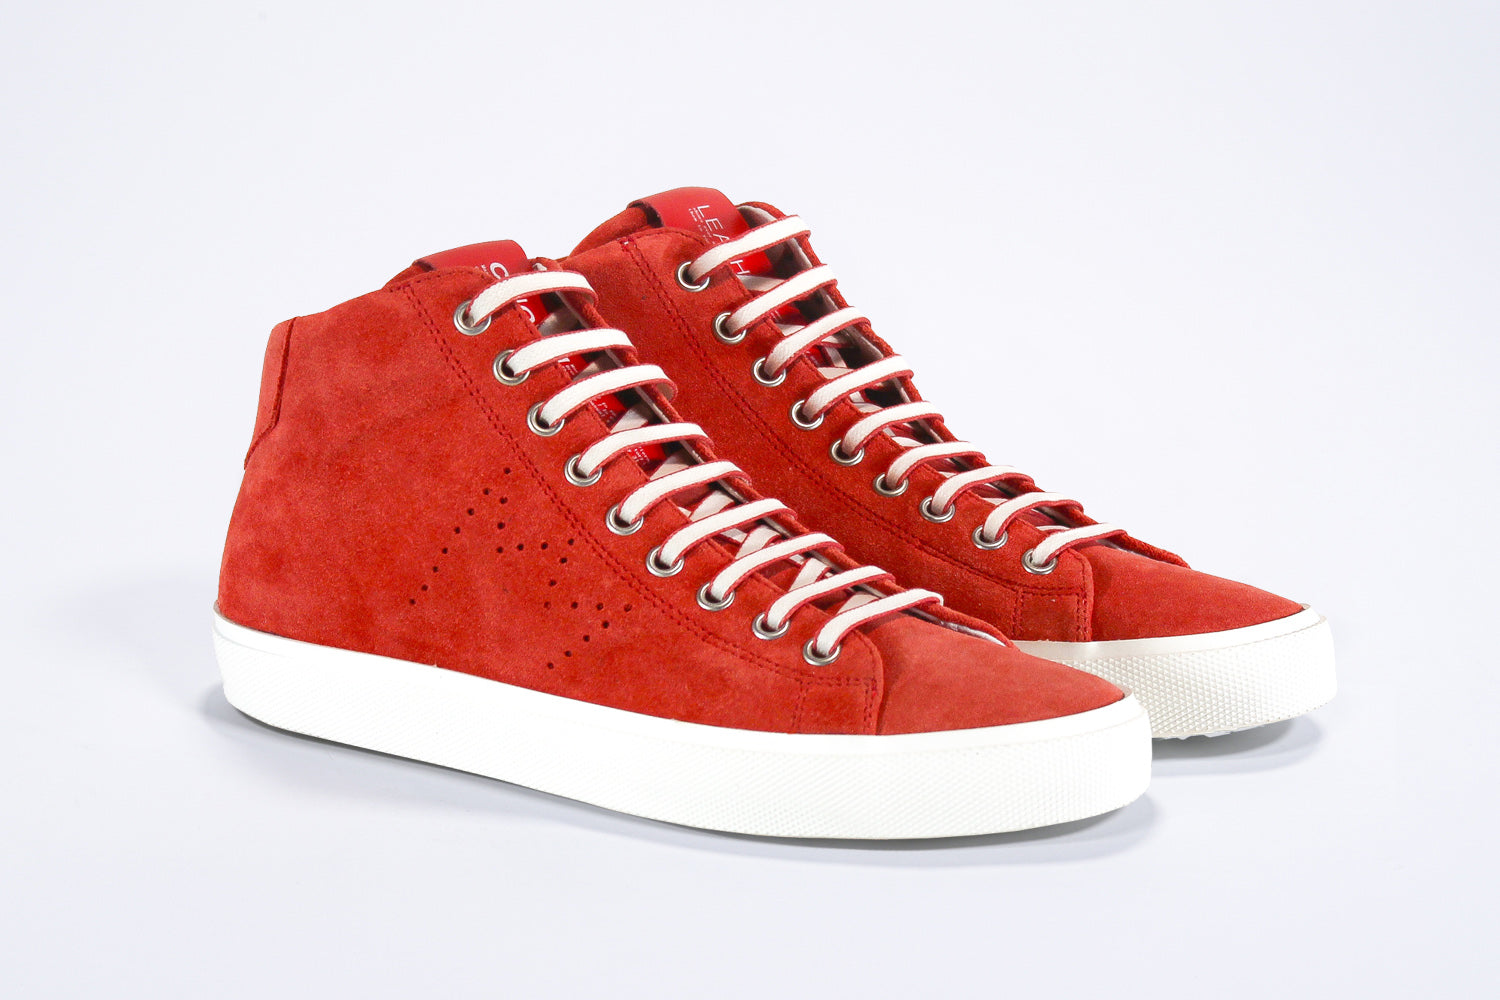 Vue de trois quarts de l'avant de la chaussure sneaker en daim rouge et cuir, avec fermeture éclair interne et semelle blanche.